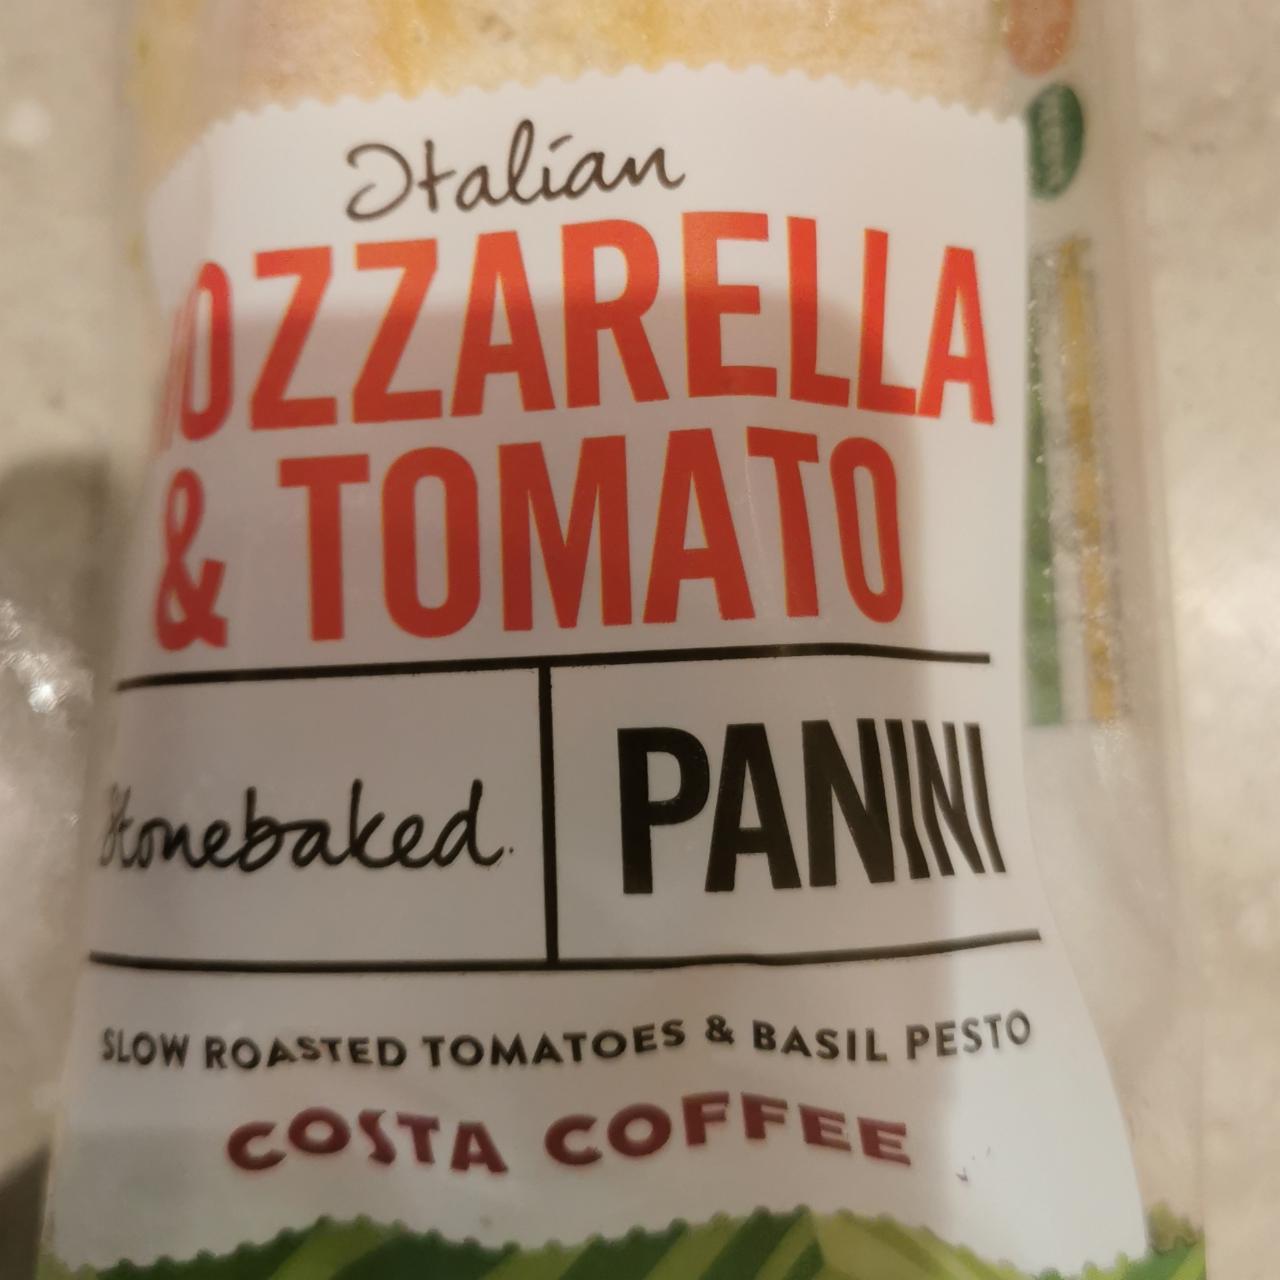 Fotografie - Italian Mozzarella & Tomato Panini Costa Coffee